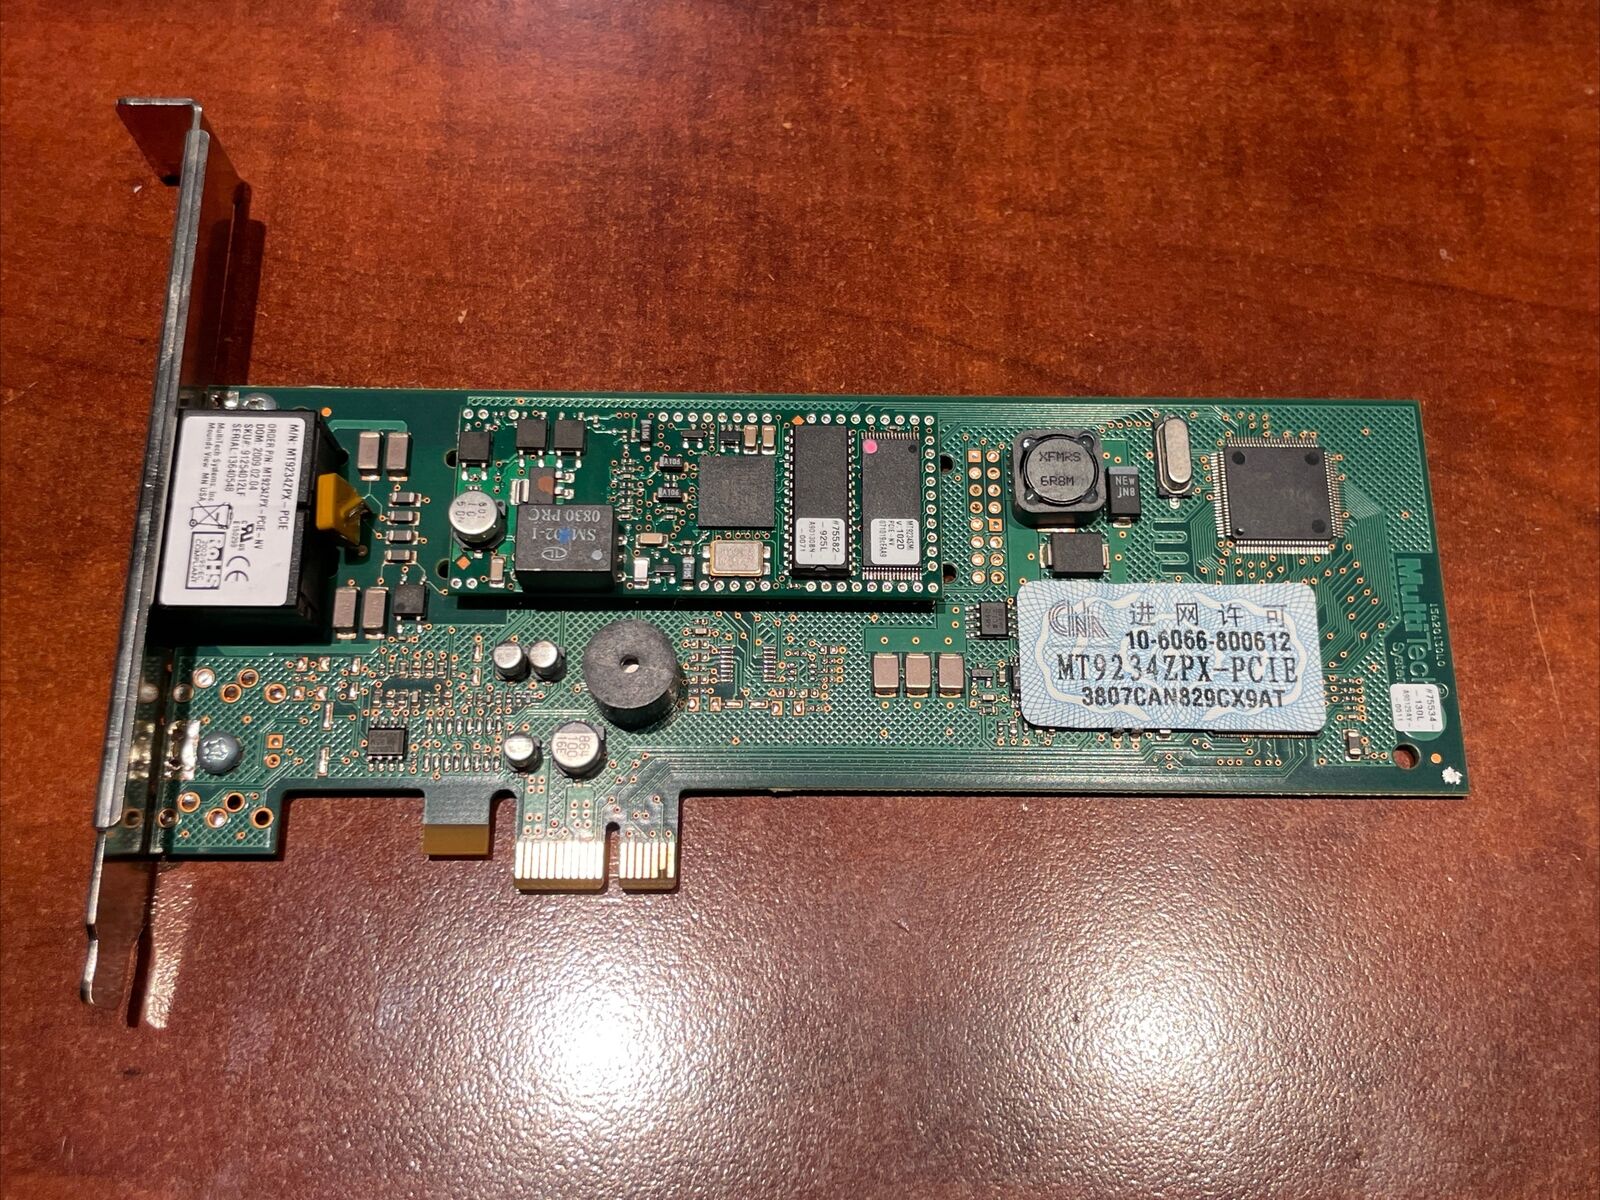 MultiTech MT9234ZPX-PCIE-NV MultiModem ZPX 56Kb/s Modem Card